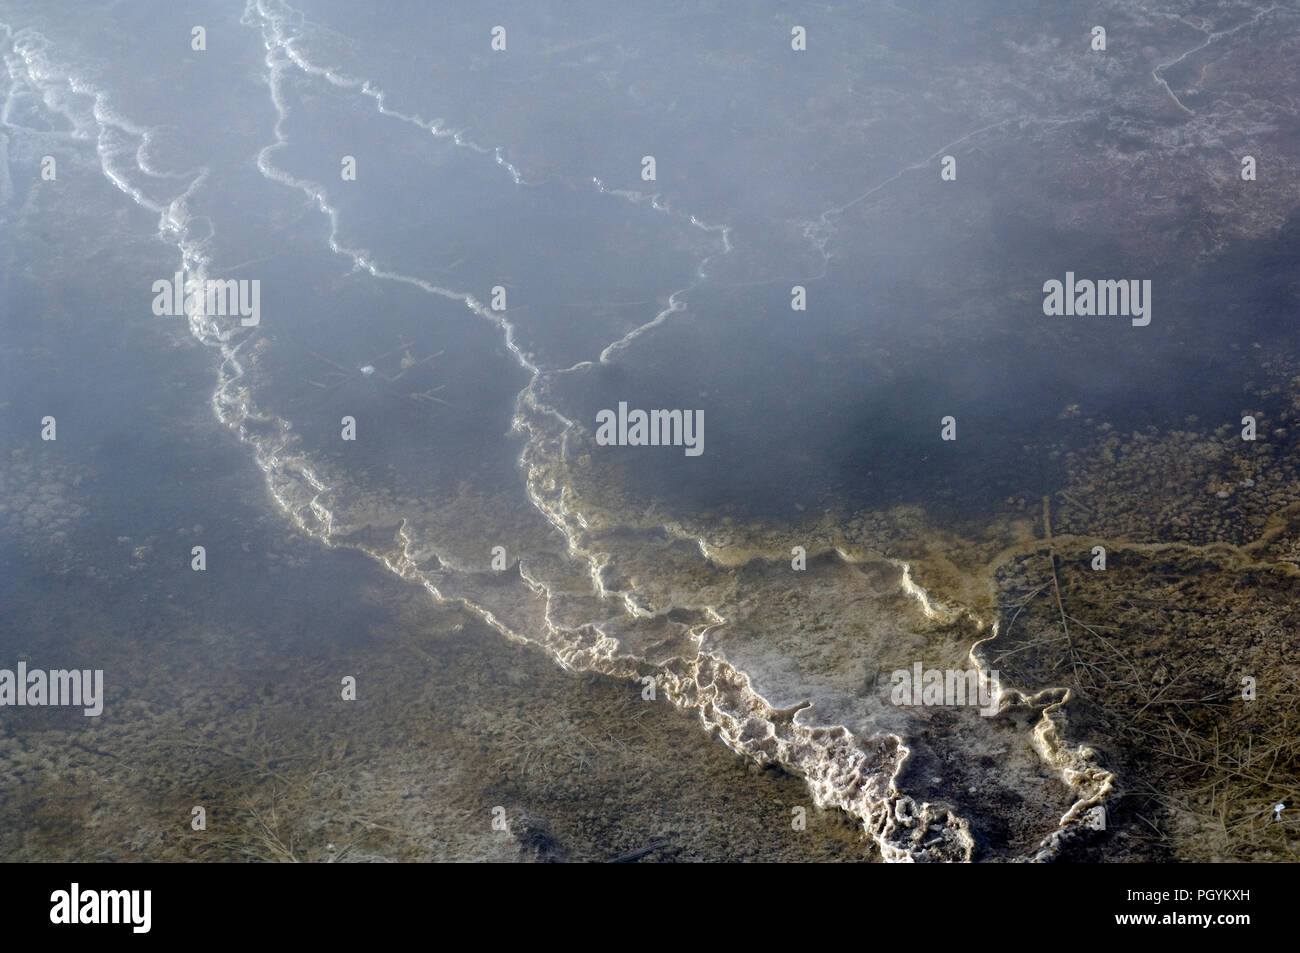 USA - Yellowstone - Hot Spring - Fuente de piedra caliza d'eau chaude - concreción calcaire Foto de stock